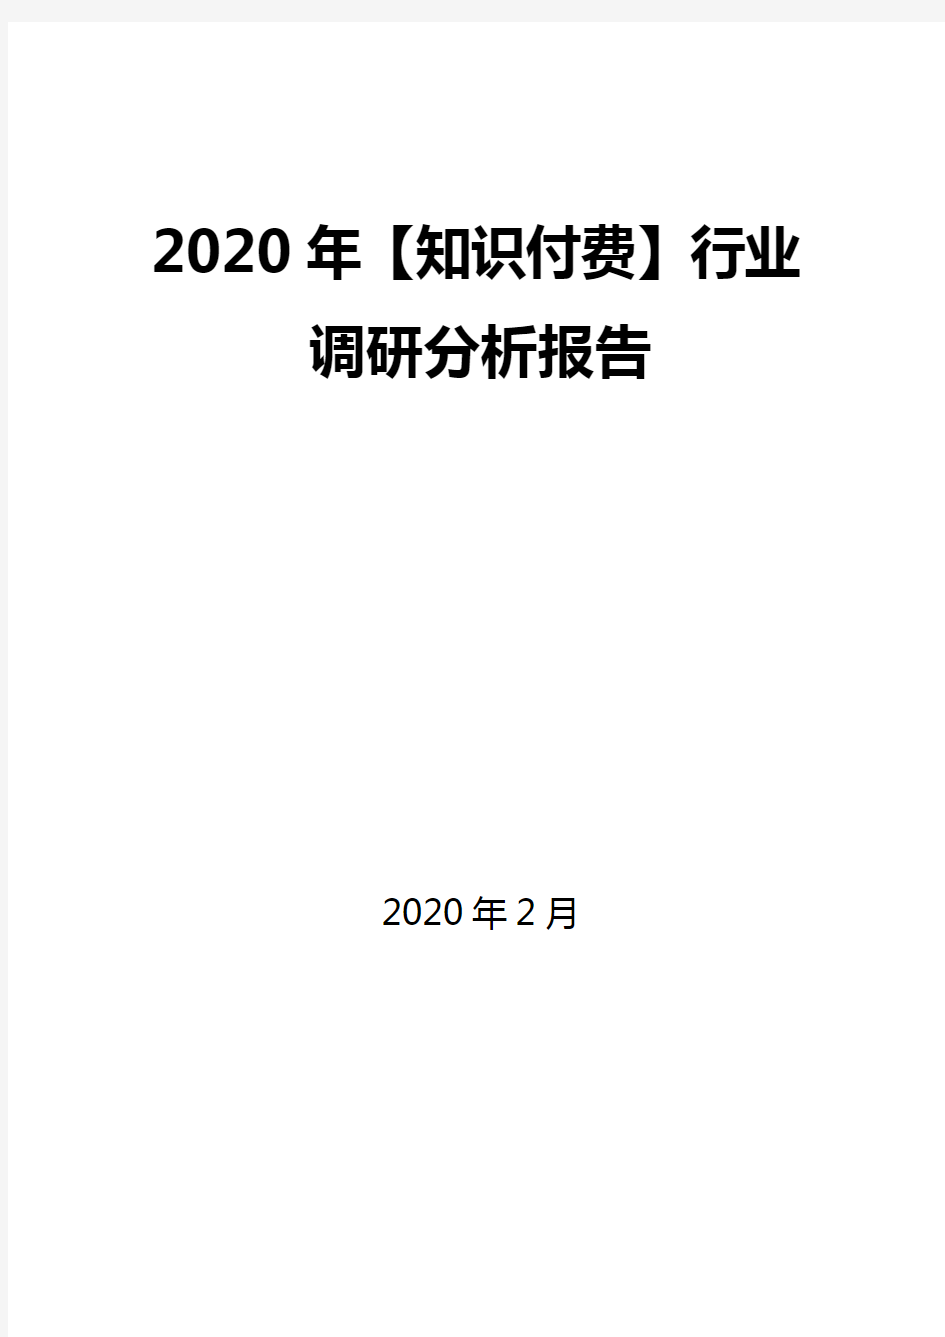 2020年【知识付费】行业调研分析报告